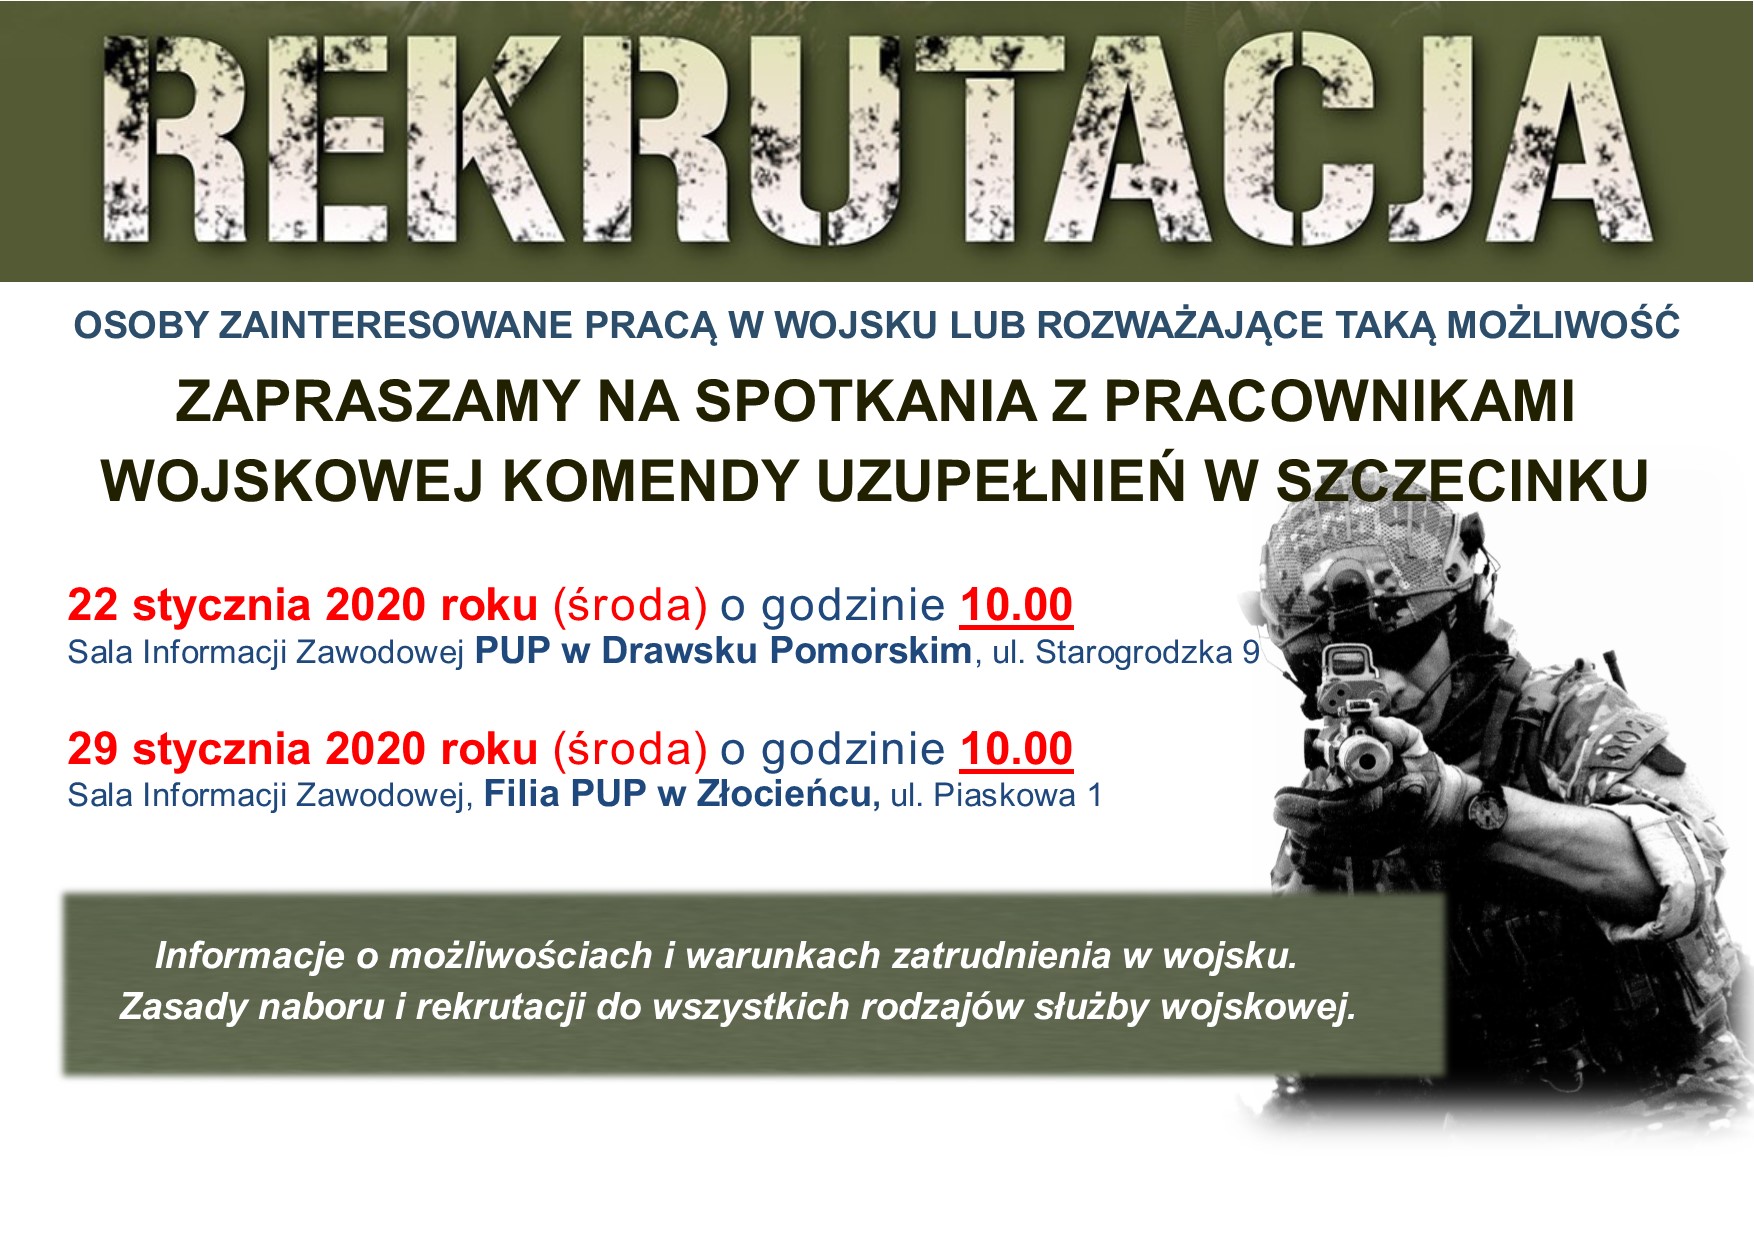 Spotkanie rekrutacyjne dla osób zainteresowanych podjęciem zatrudnienia w wojsku. Spotkanie poprowadzą pracownicy WKU w Szczecinku.